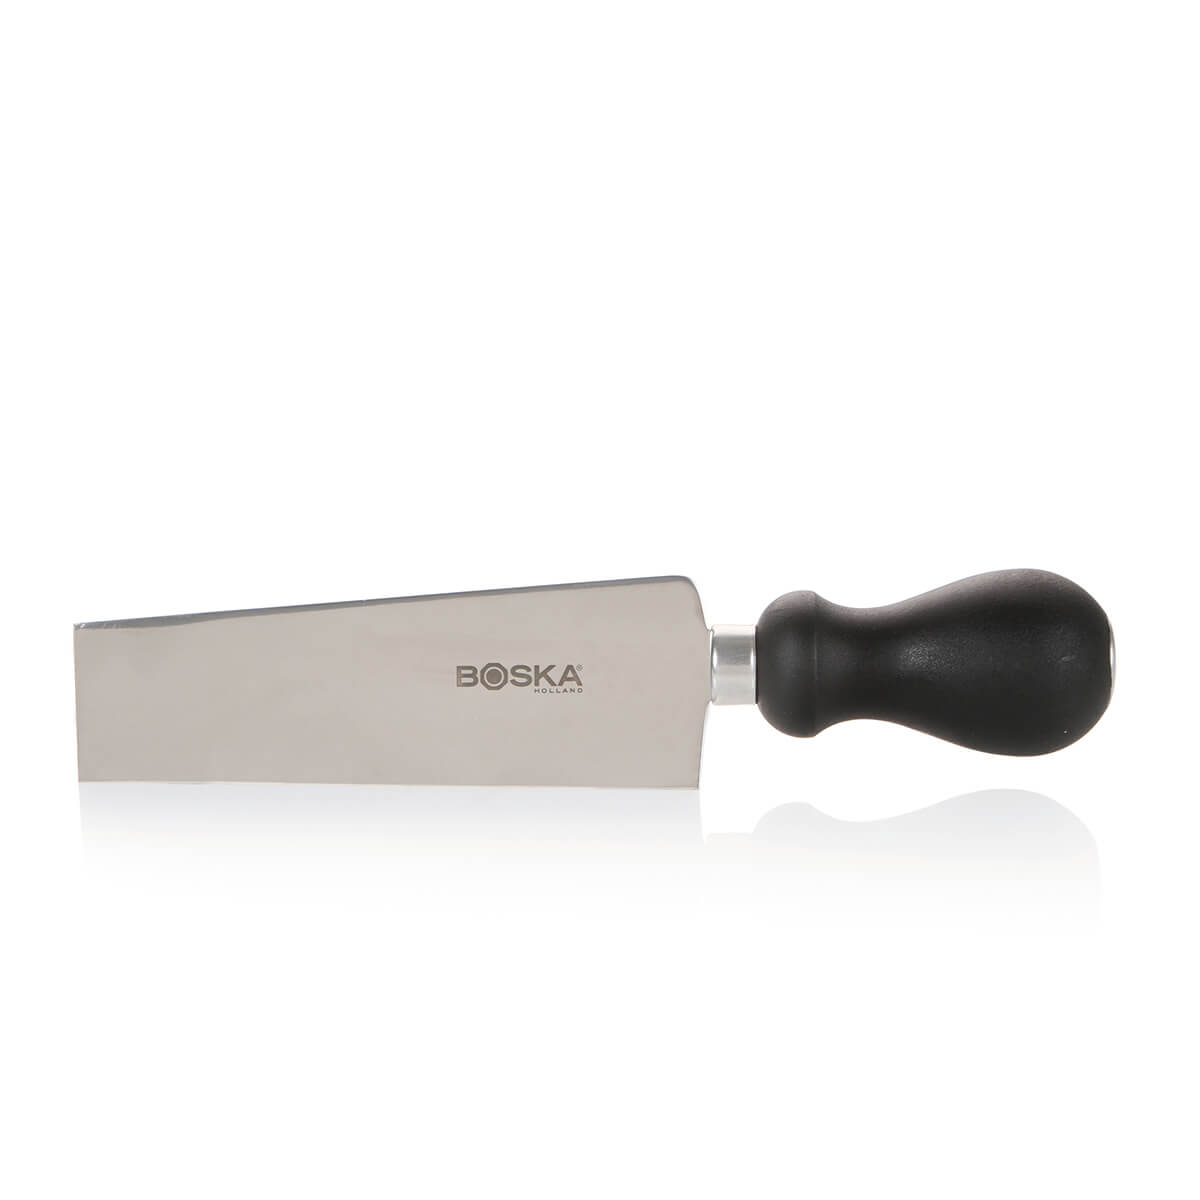 Couteau à Raclette Pro (15 cm)